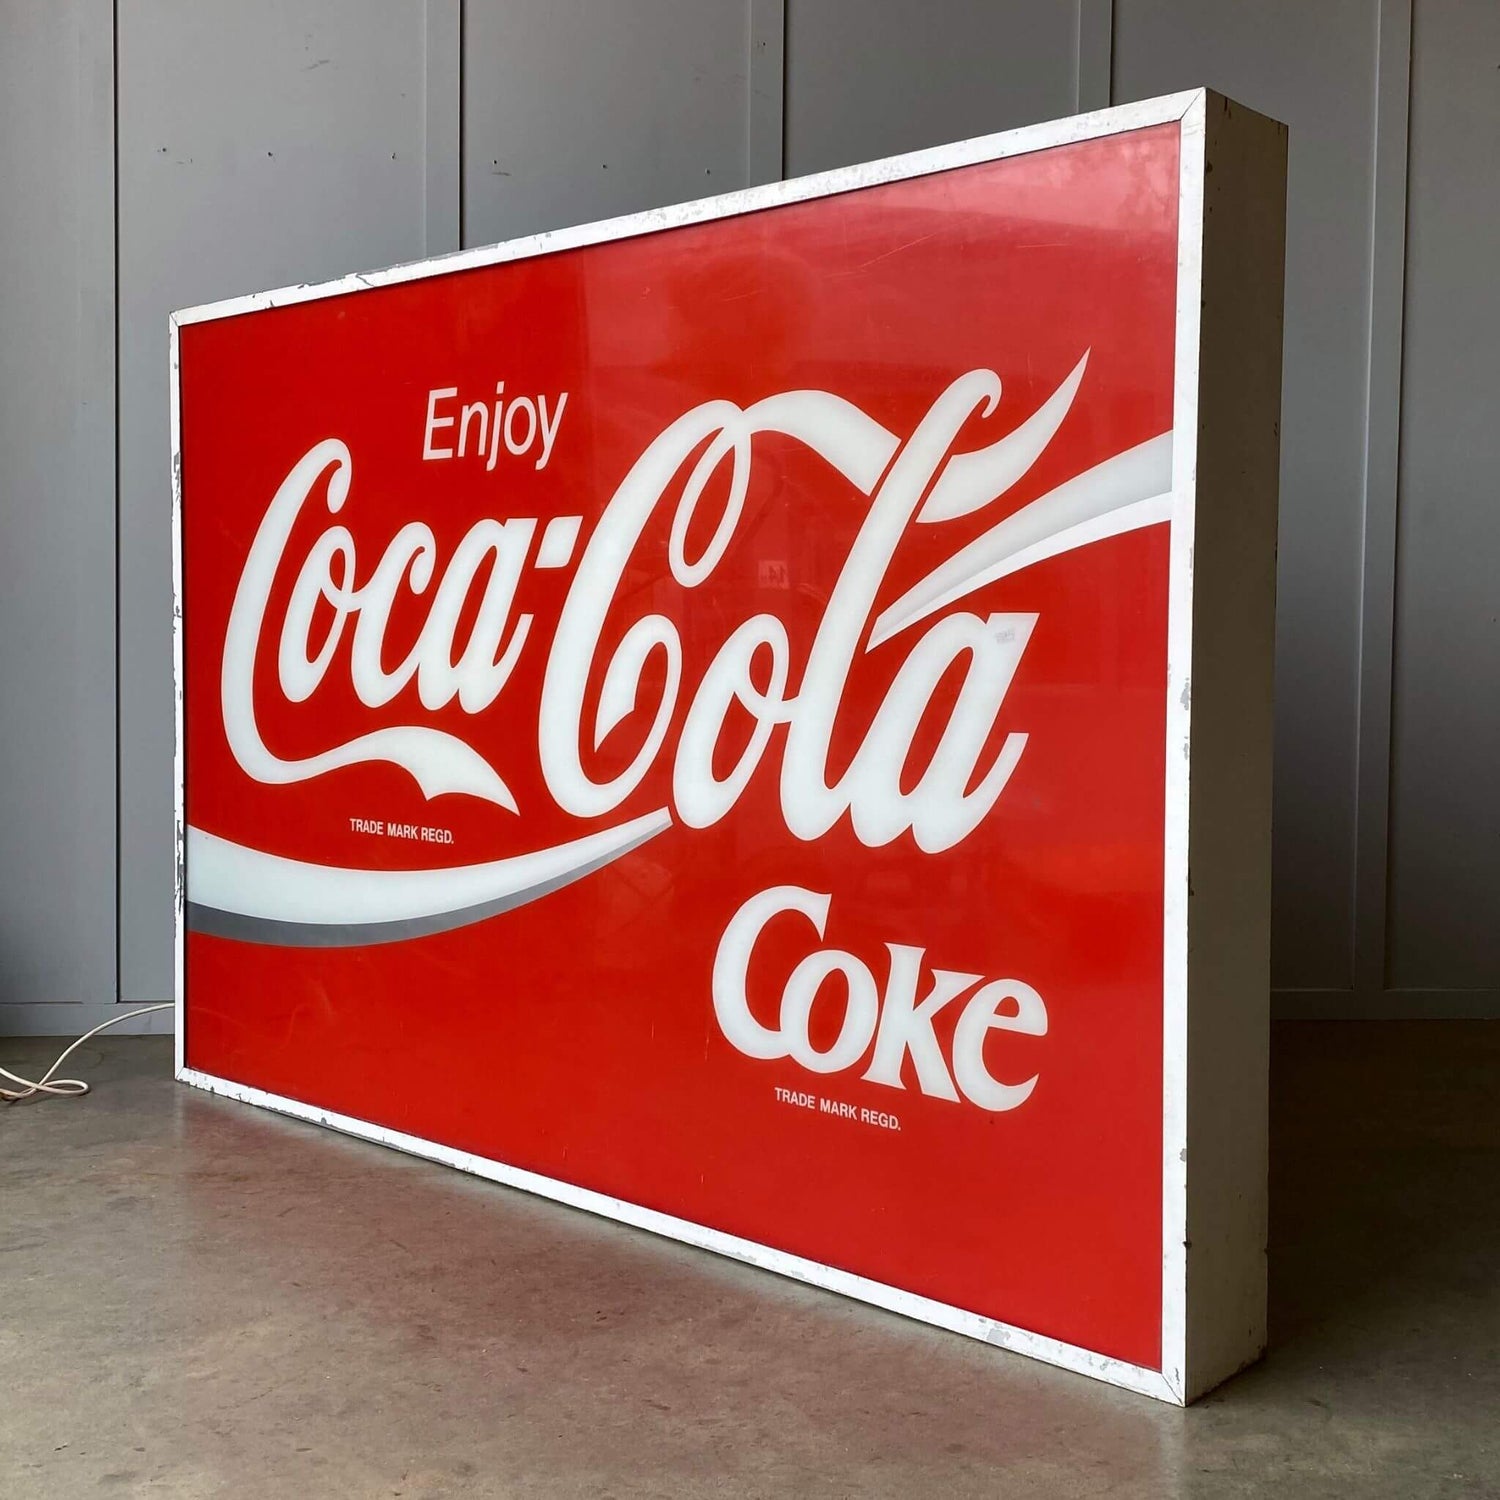 Collectible coca cola advertising sign